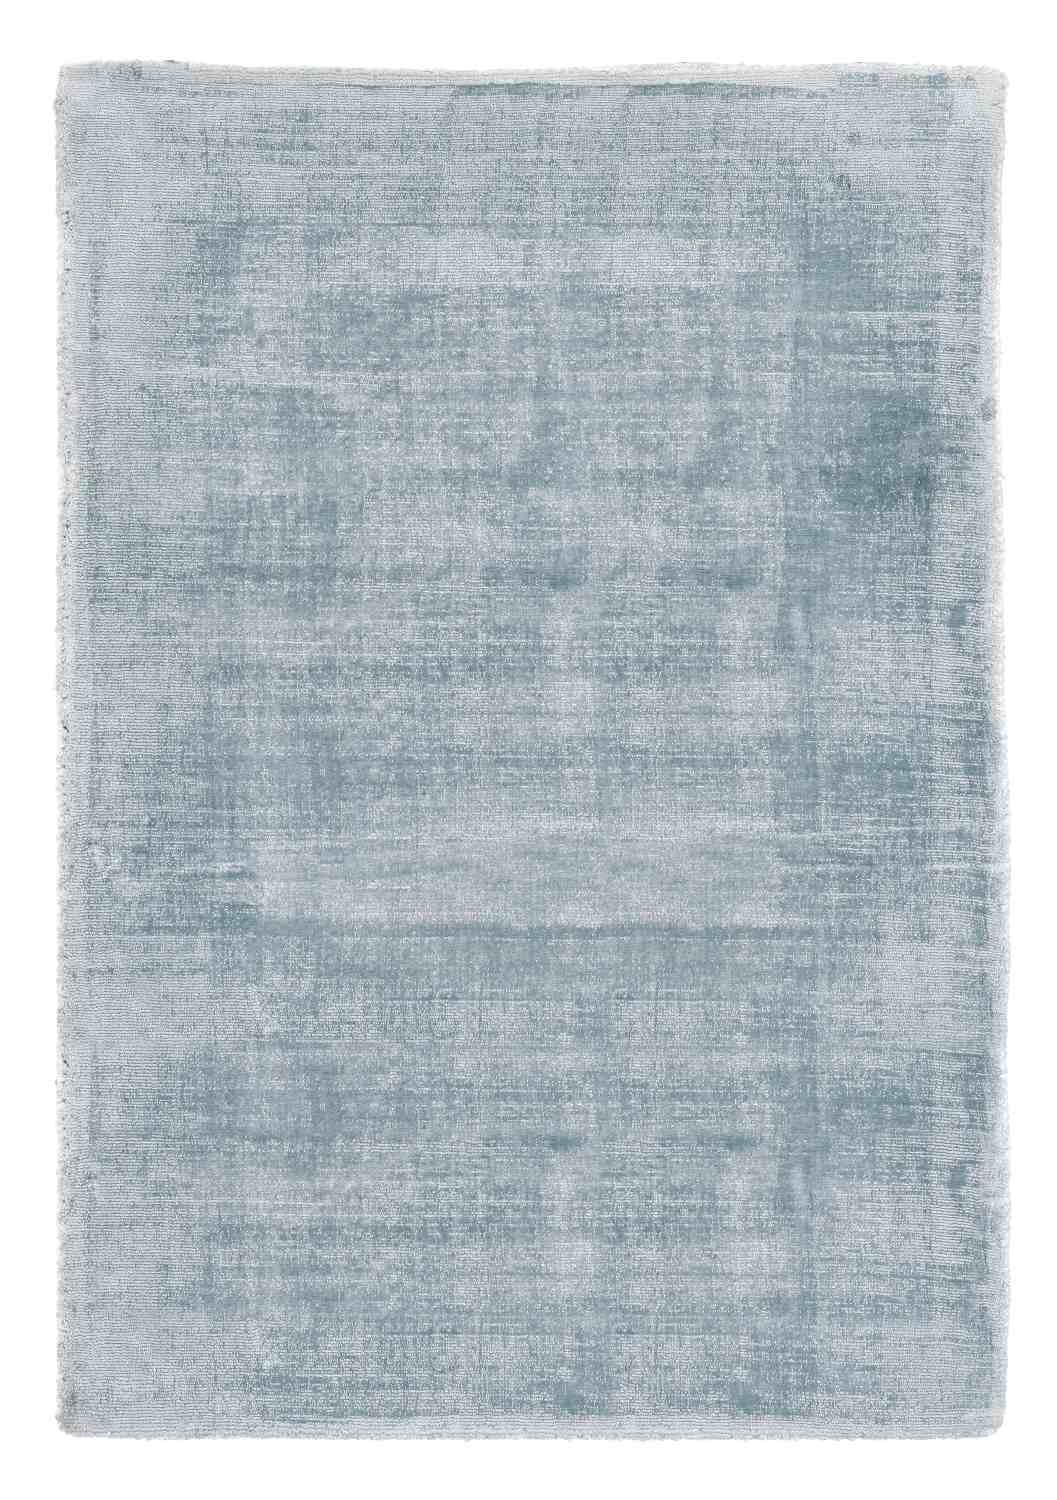 Der Teppich Rashmi überzeugt mit seinem modernen Design. Gefertigt wurde die Vorderseite aus Viskose und die Rückseite aus Baumwolle. Der Teppich besitzt eine hellblauen Farbton und die Maße von 160x230 cm.